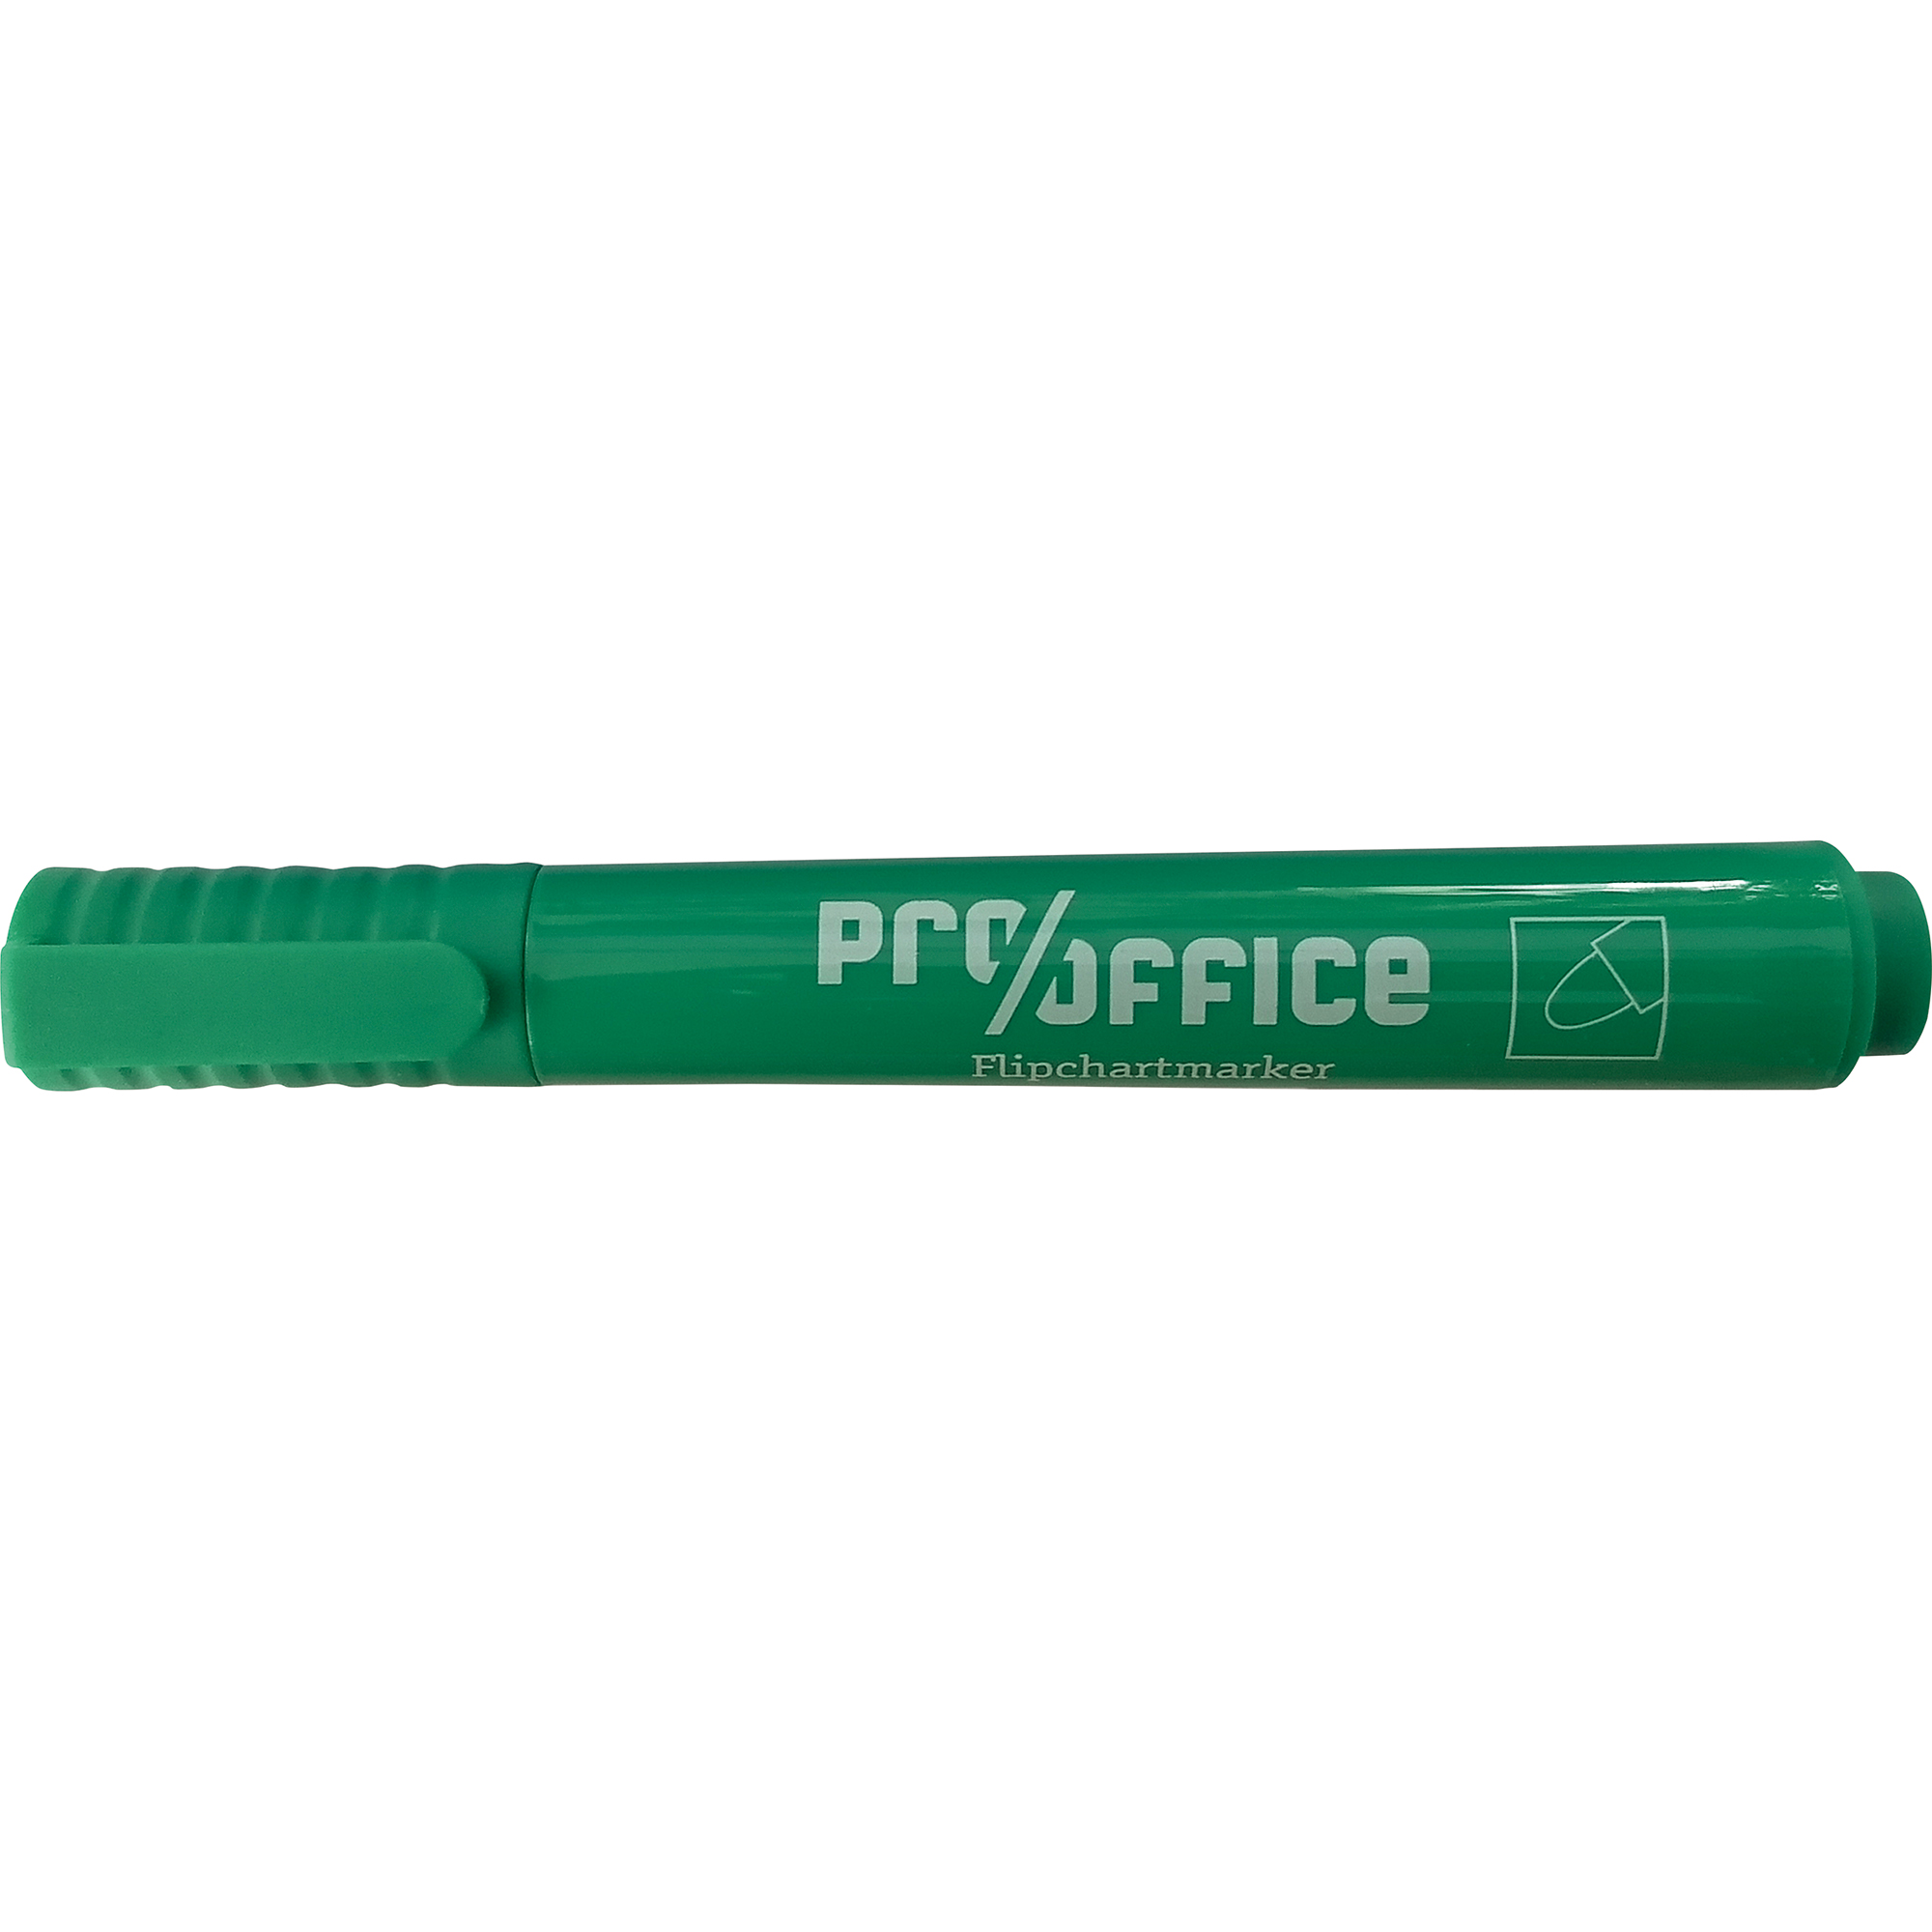 Pro/office Flipchartmarker 1-3mm mit Rundspitze grün